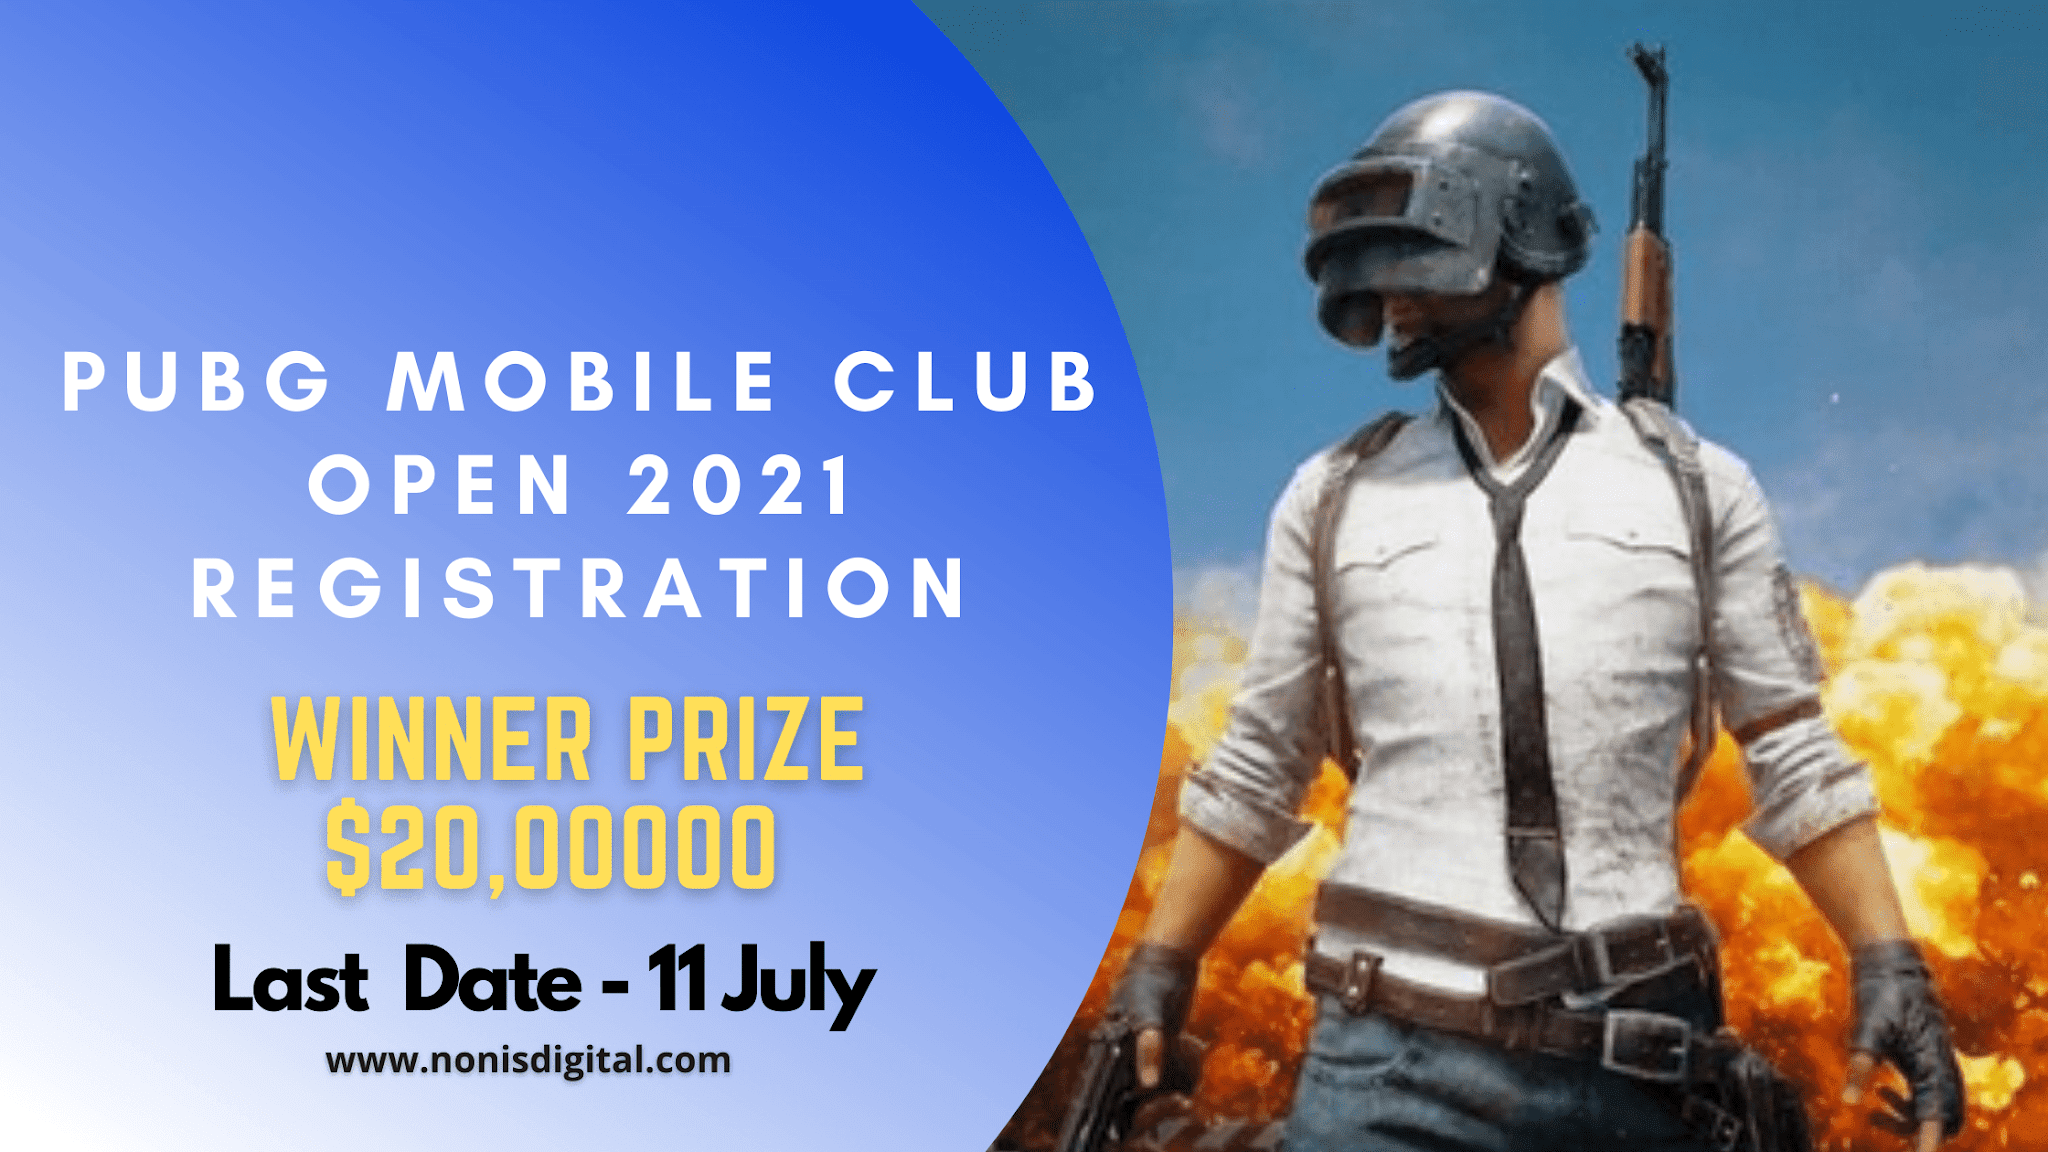 PUBG Mobile Club Open 2021 Registration